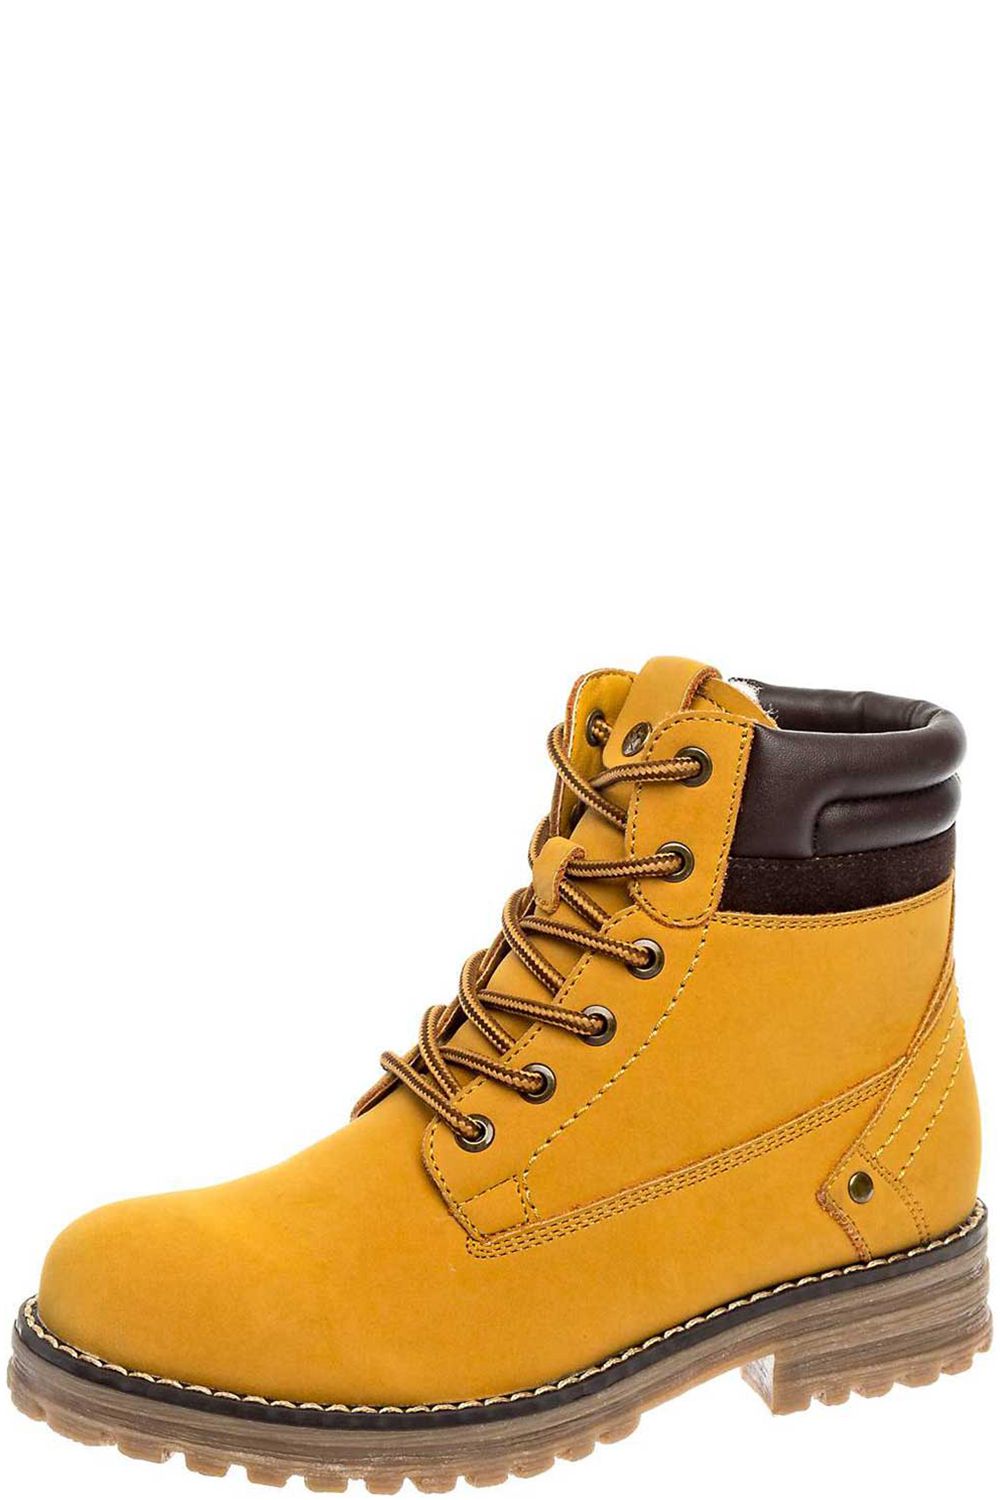 Ботинки Keddo, размер 35, цвет оранжевый 588127/10-20 - фото 1